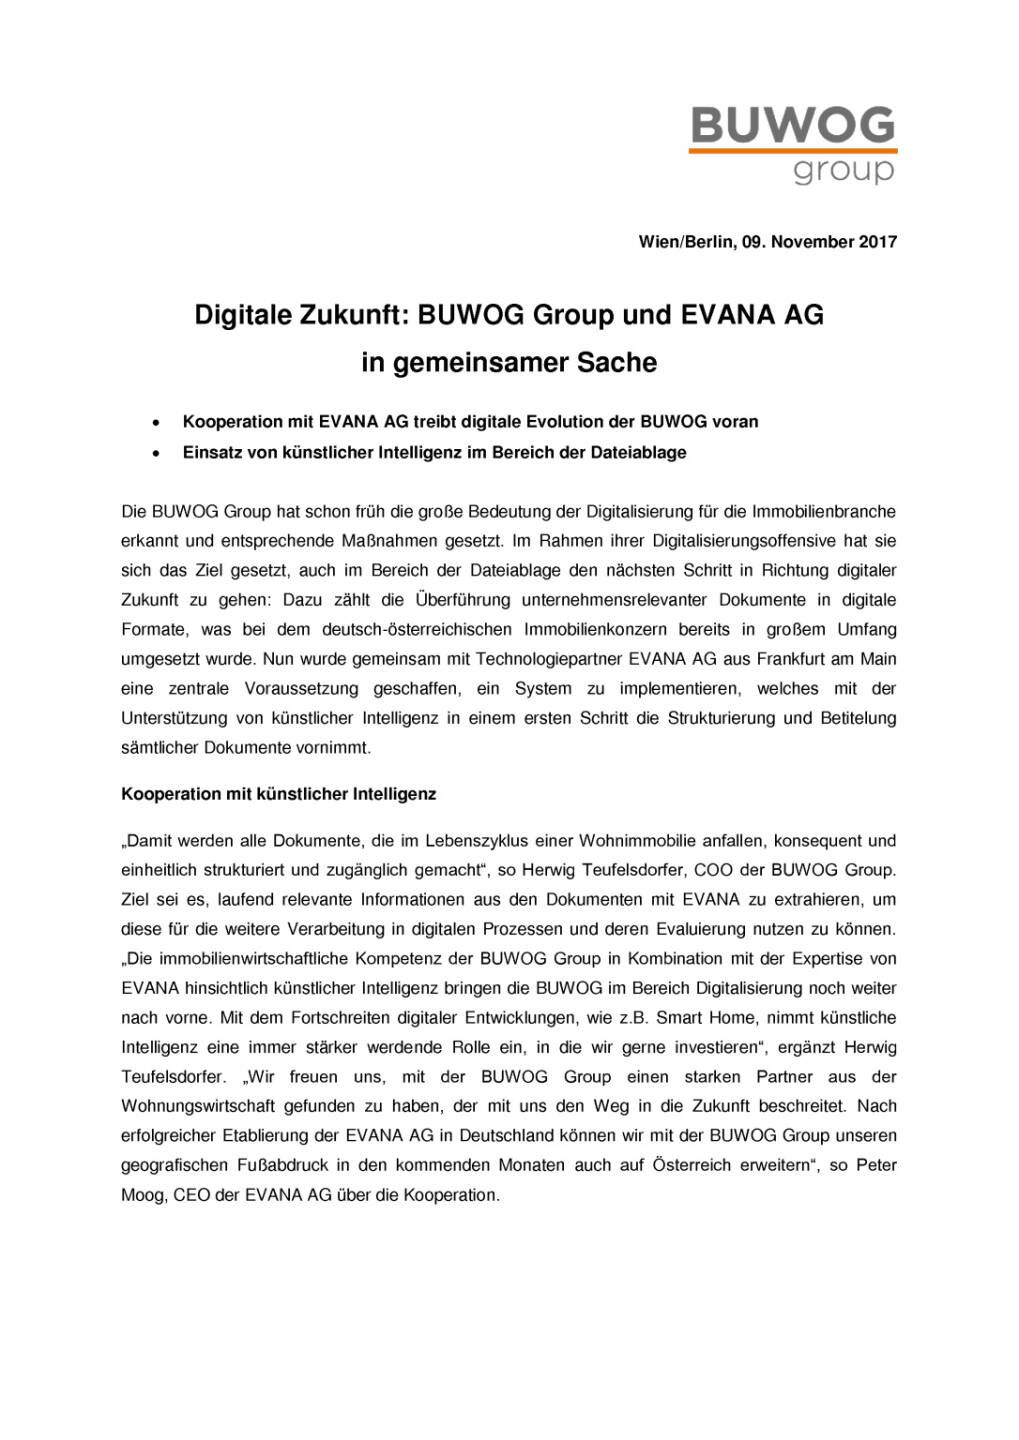 Buwog nutzt künstliche Intelligenz, Seite 1/2, komplettes Dokument unter http://boerse-social.com/static/uploads/file_2386_buwog_nutzt_kunstliche_intelligenz.pdf